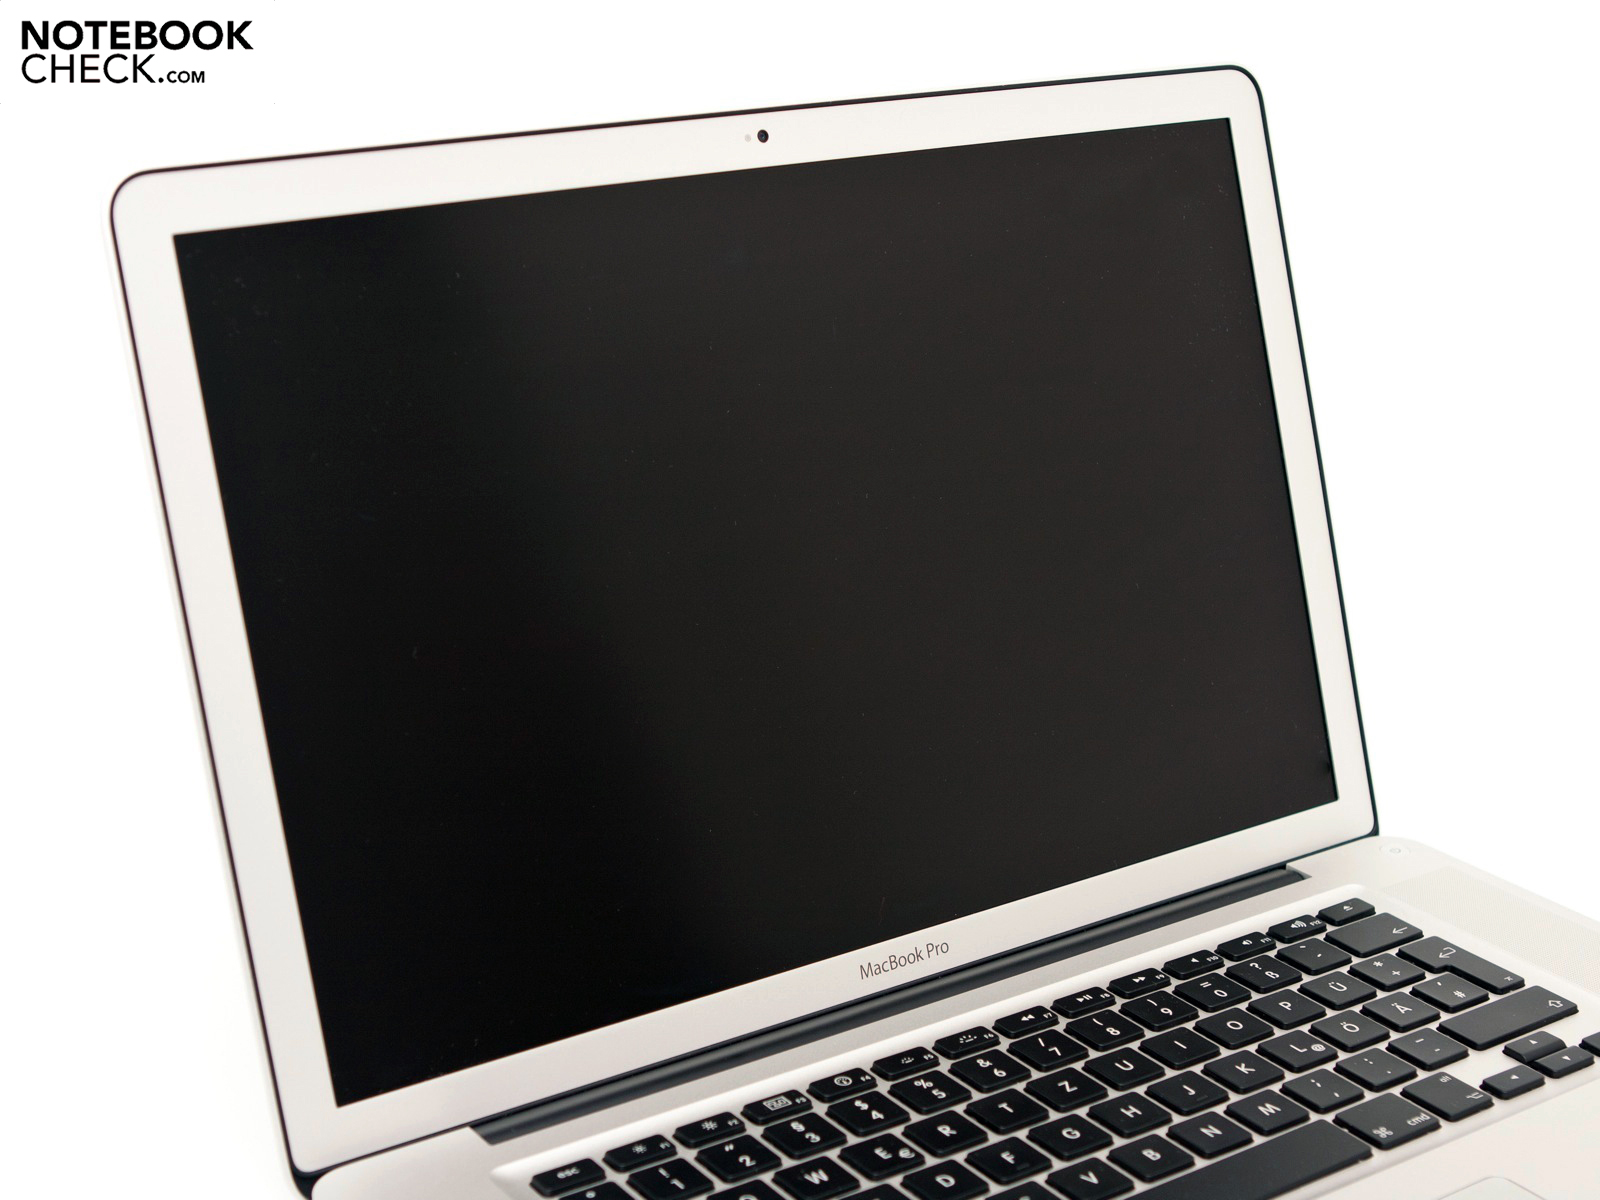 Ноутбук с матовым экраном. Apple MACBOOK Pro 15 early 2011. Apple MACBOOK Pro 2011. Матовый экран MACBOOK. Матовый экран ноутбука.